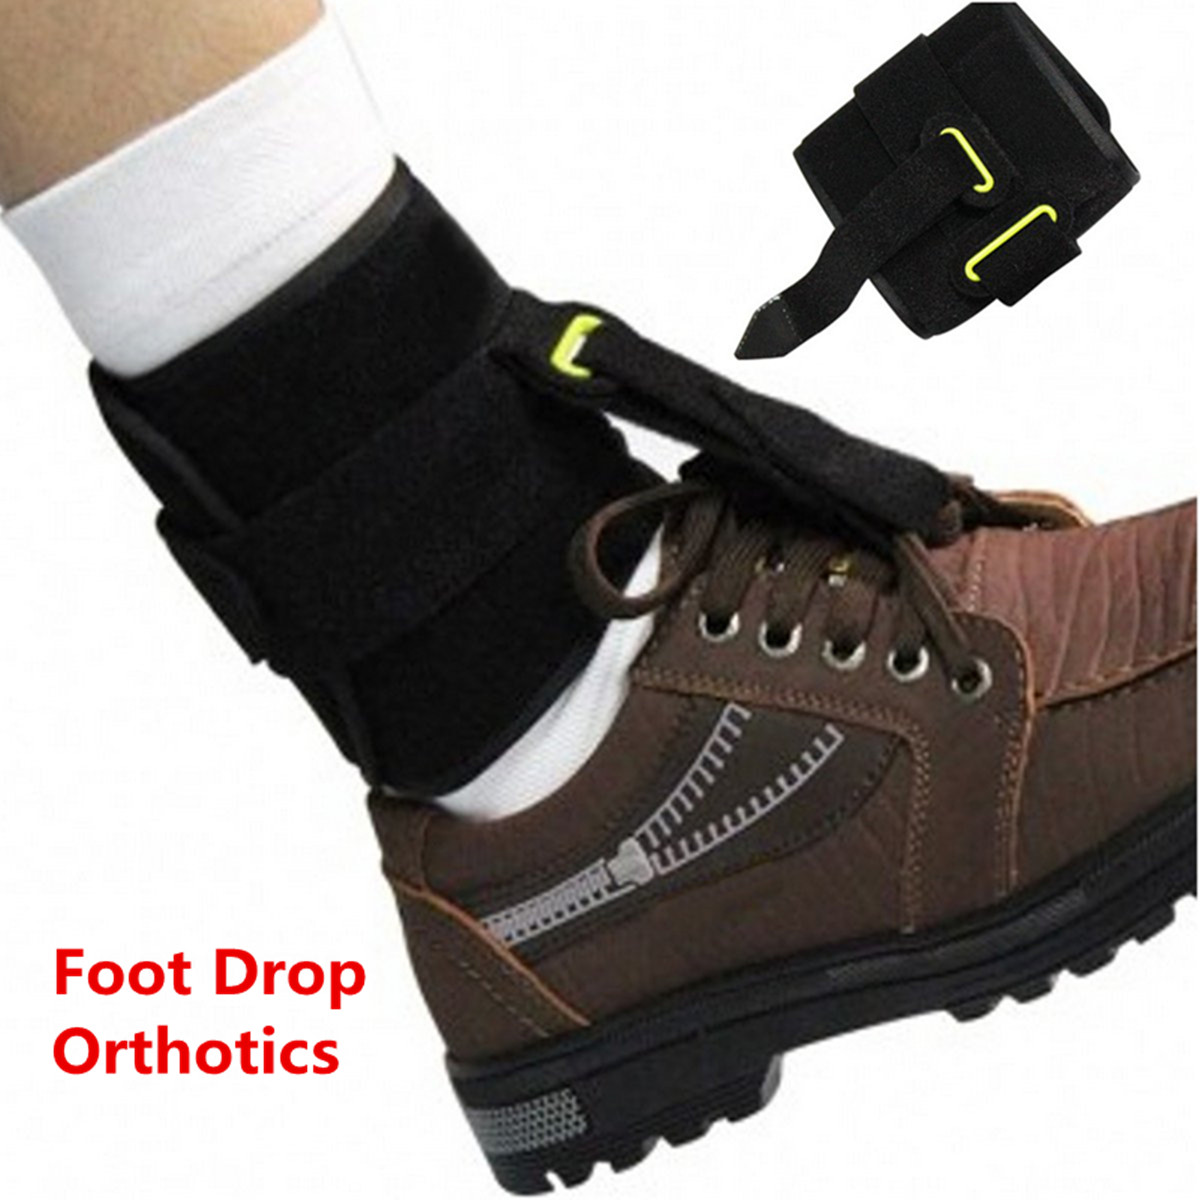 IPRee® Adjustable Foot Drop Orthotics Middle Cerebral Hemiplegia Ankle Support Braces